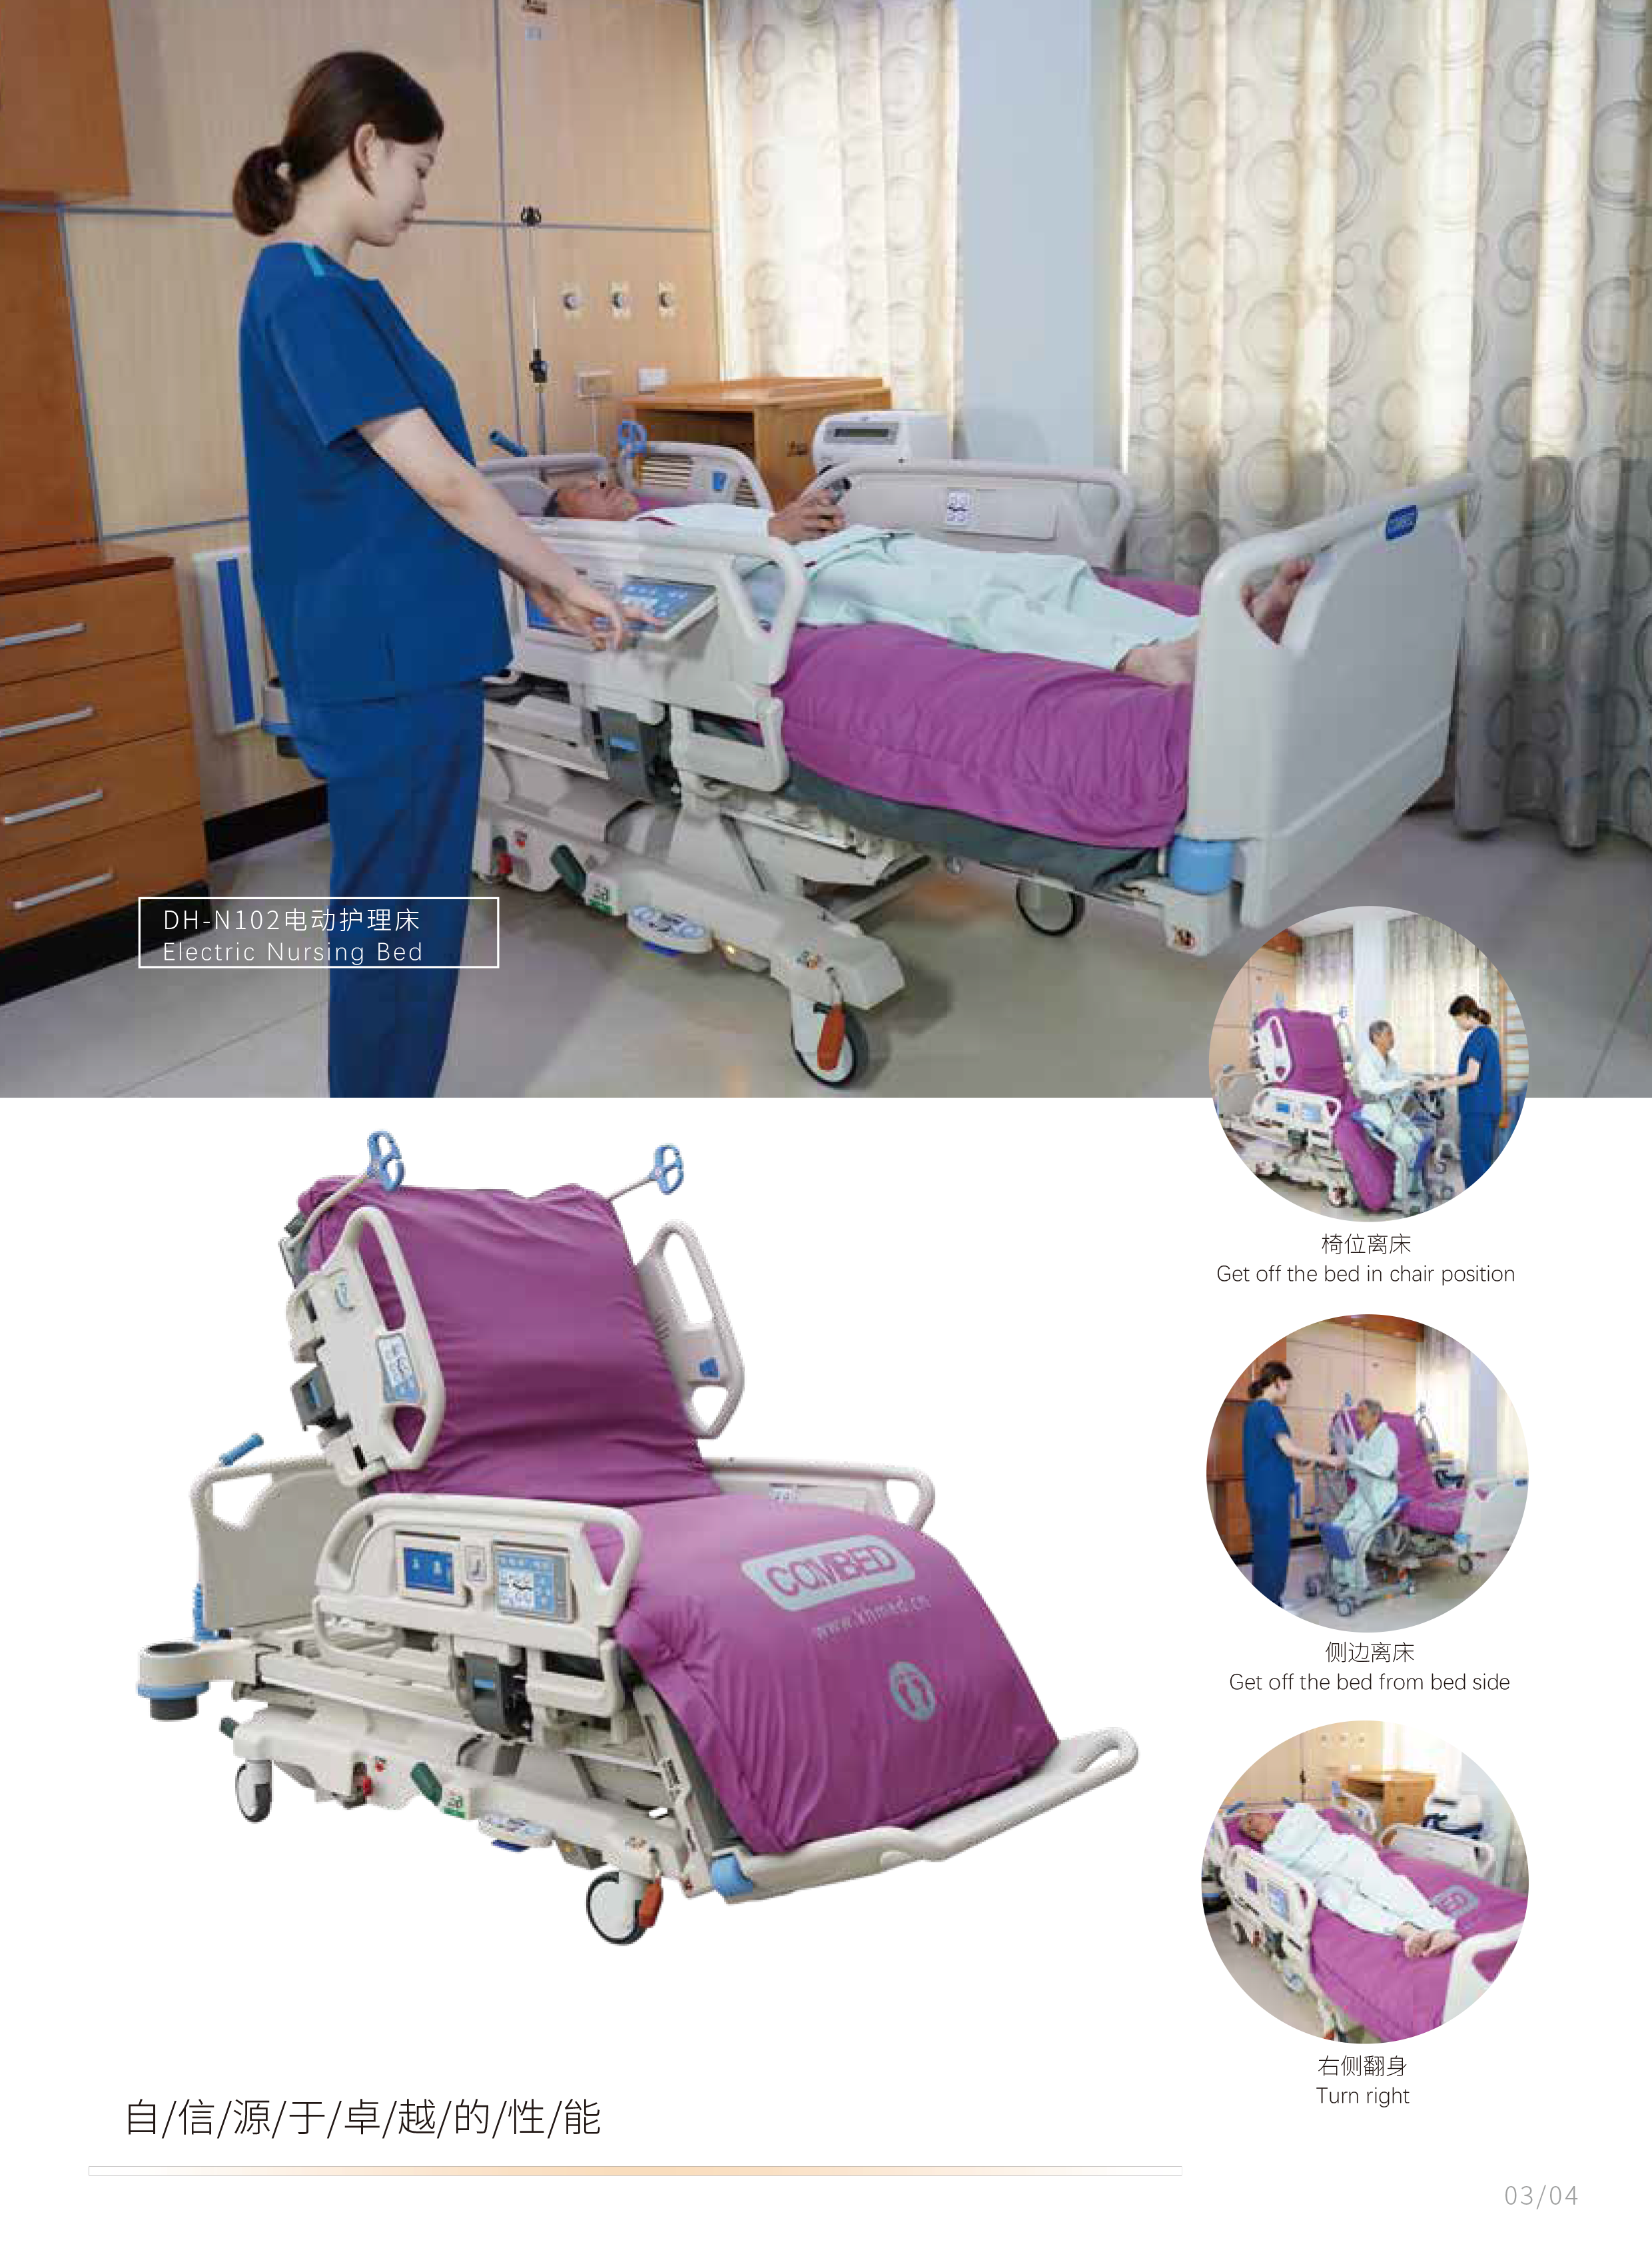 电动护理床-DH-N102彩页-3_02.png